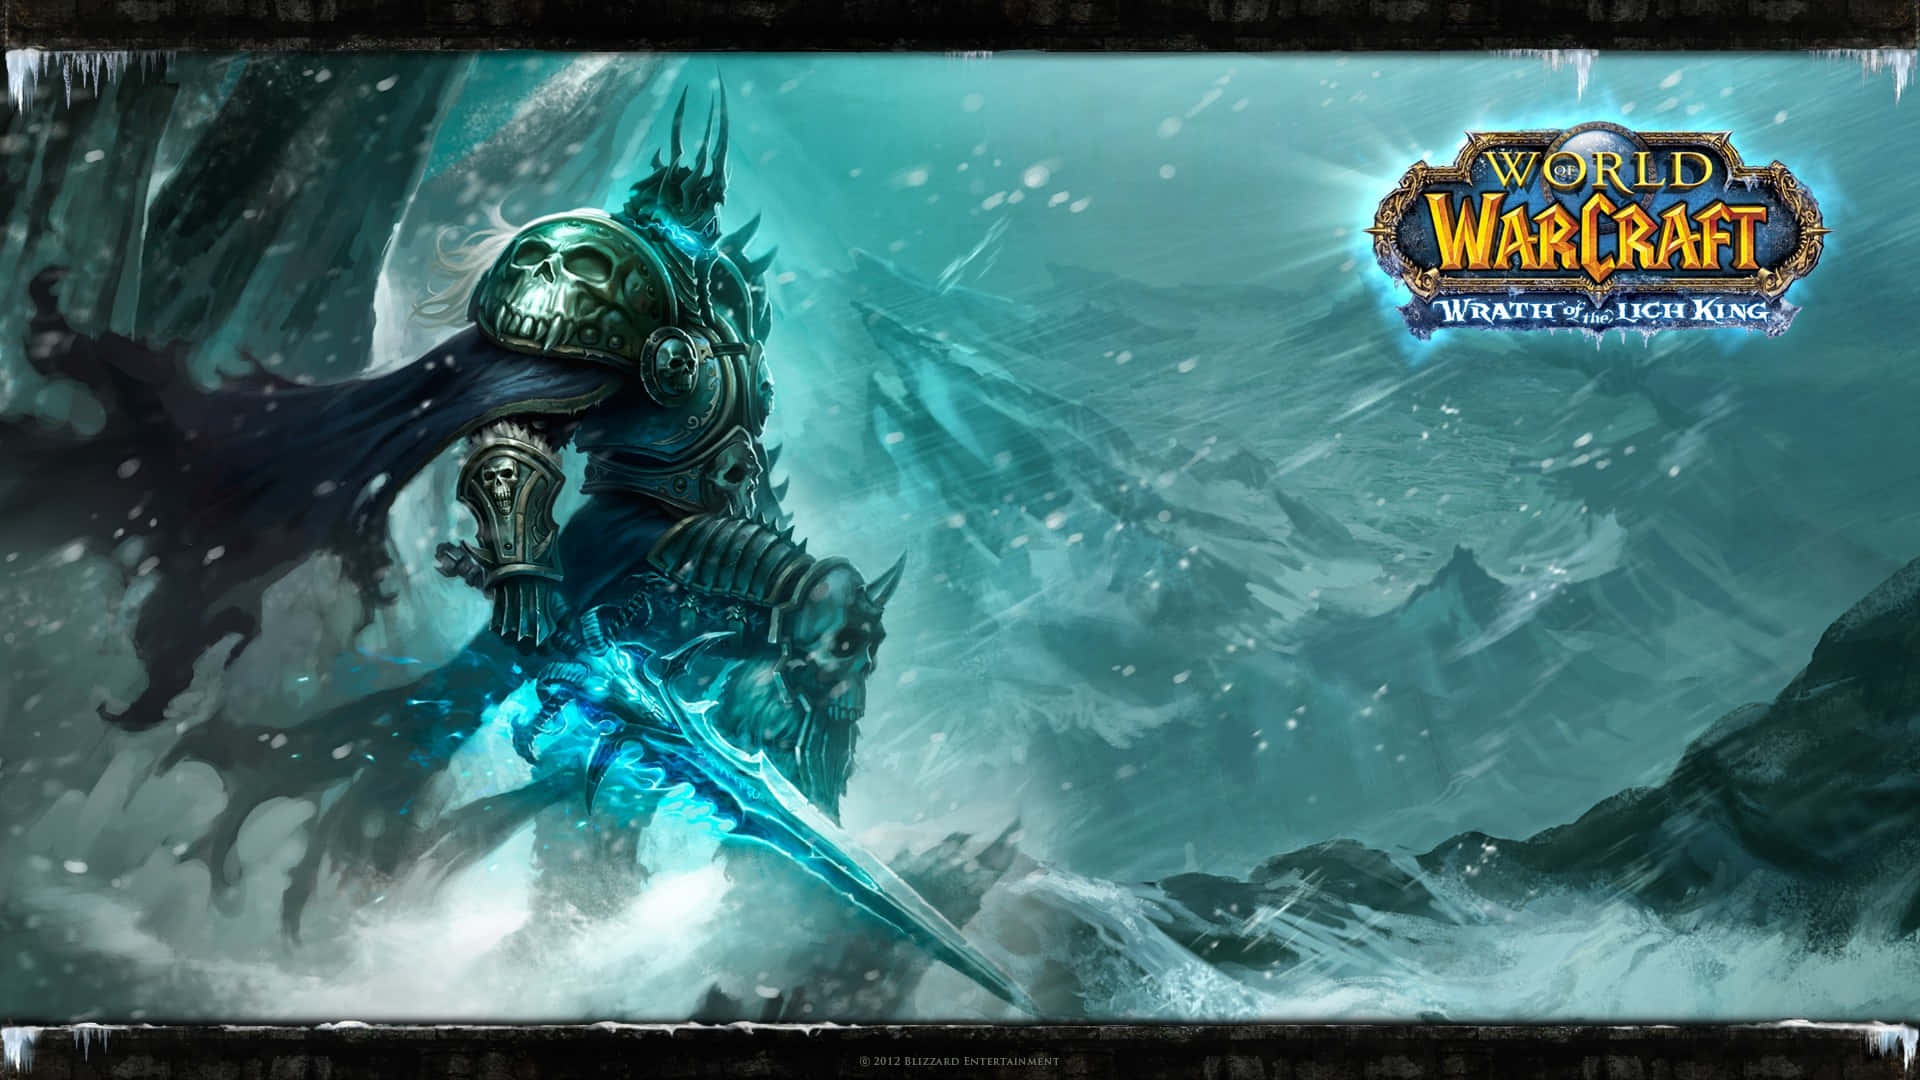 Dyk ned i den magiske verden af World Of Warcraft. Wallpaper